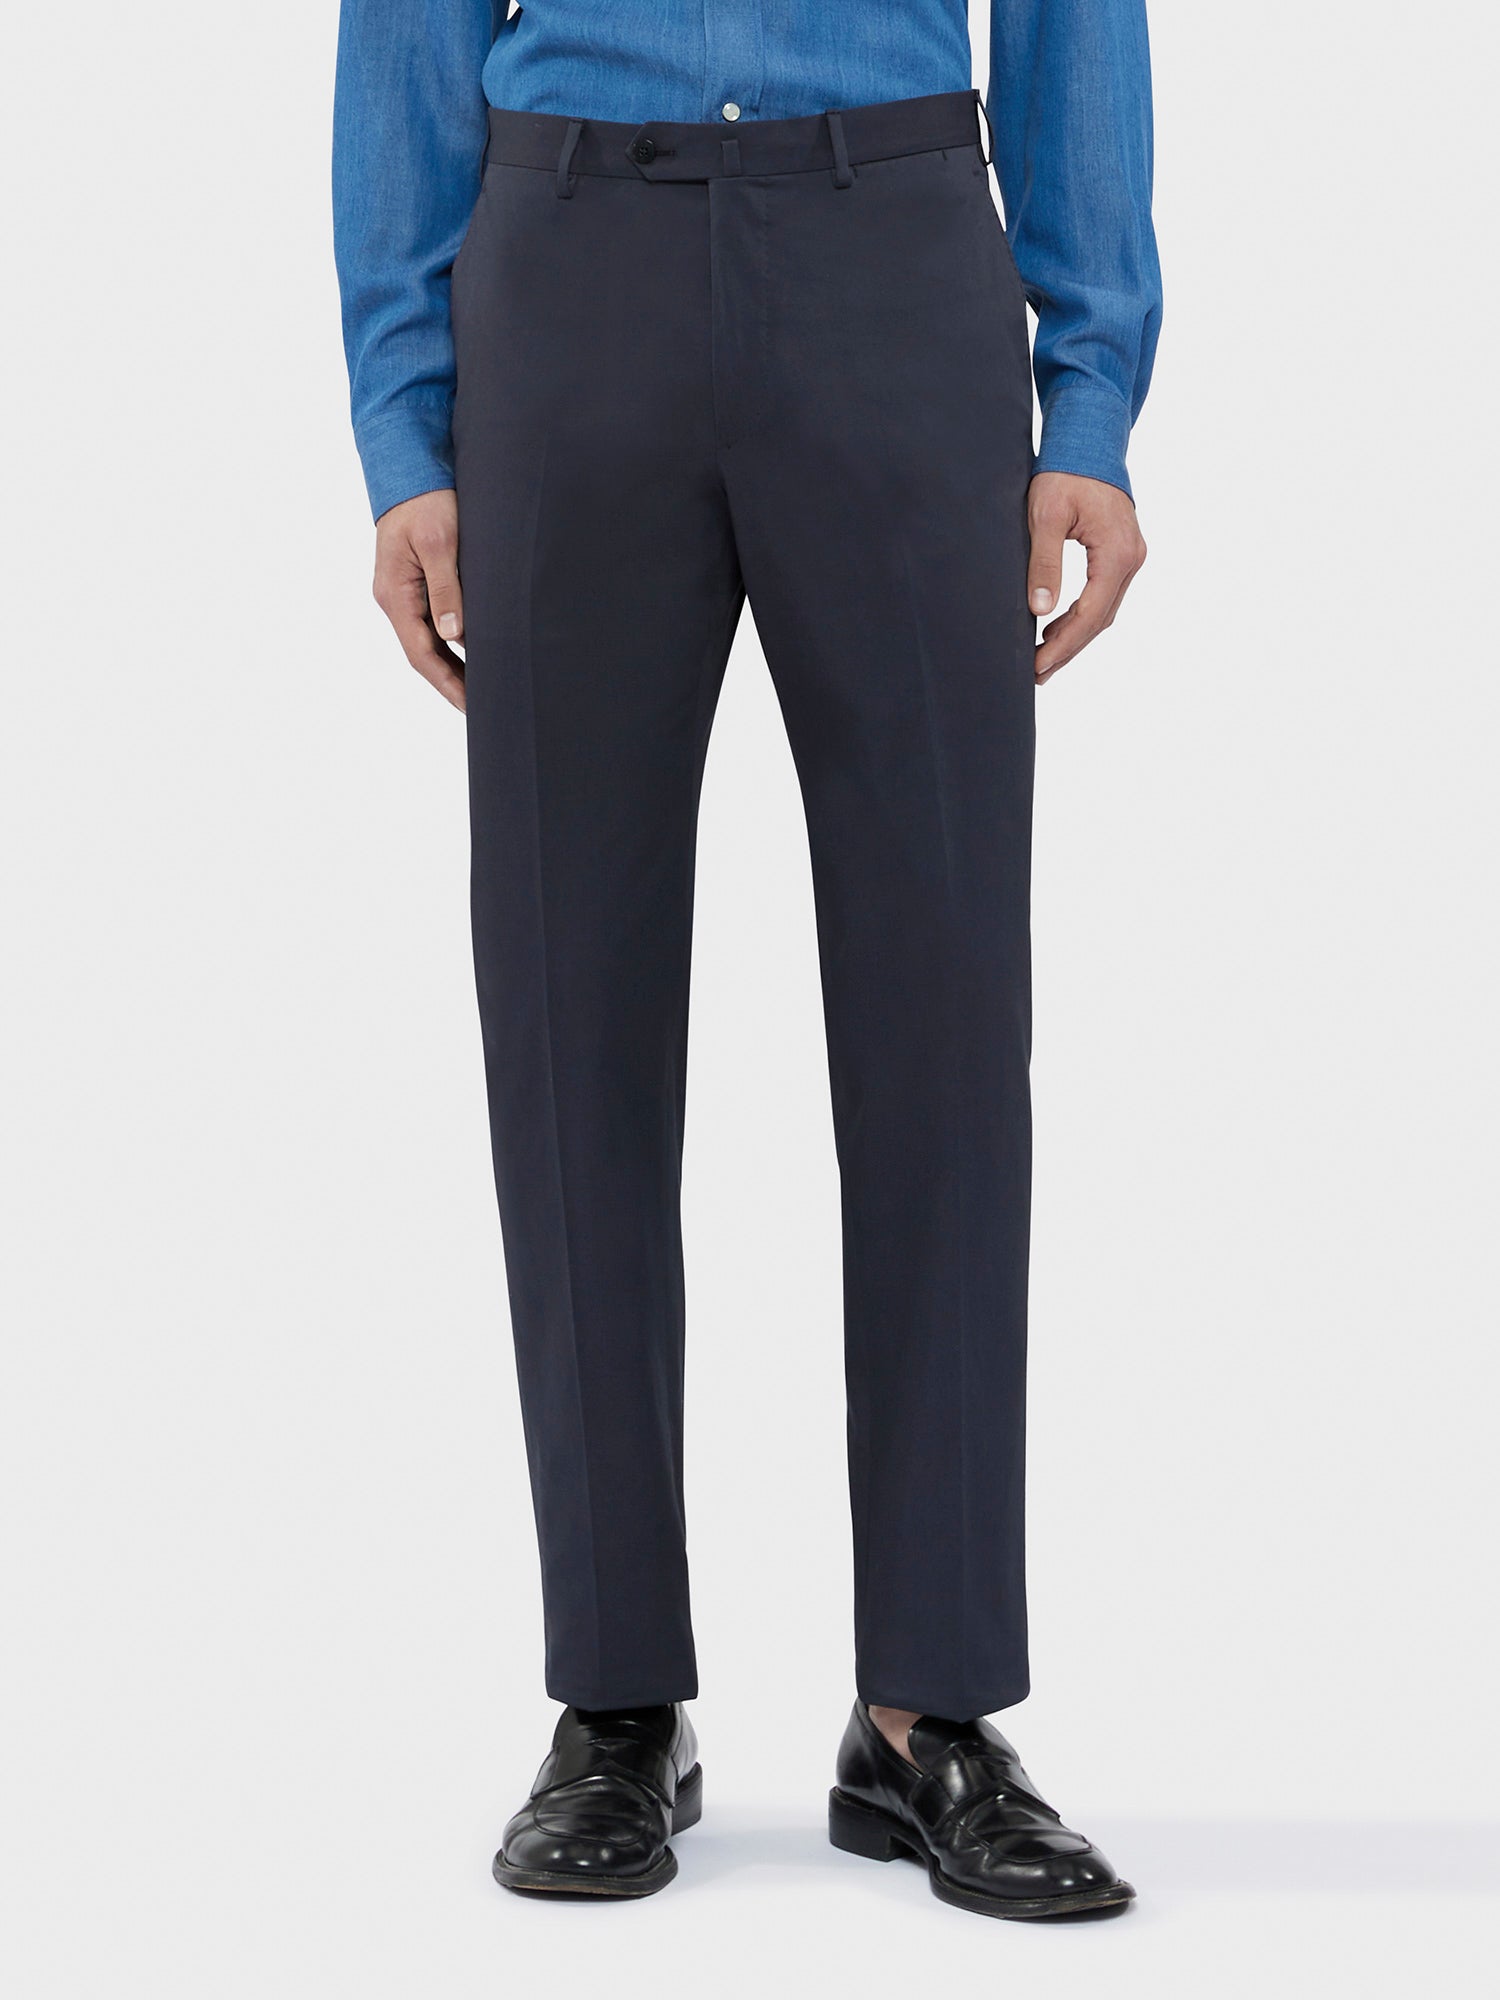 Caruso Menswear Abbigliamento Uomo Abito Aida in cotone-elastane blu drop 8R dettaglio pantalone